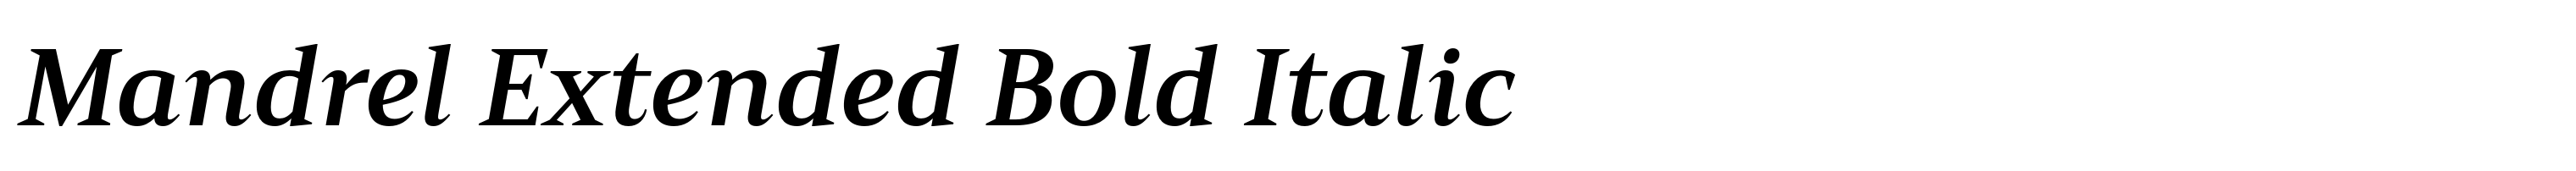 Mandrel Extended Bold Italic